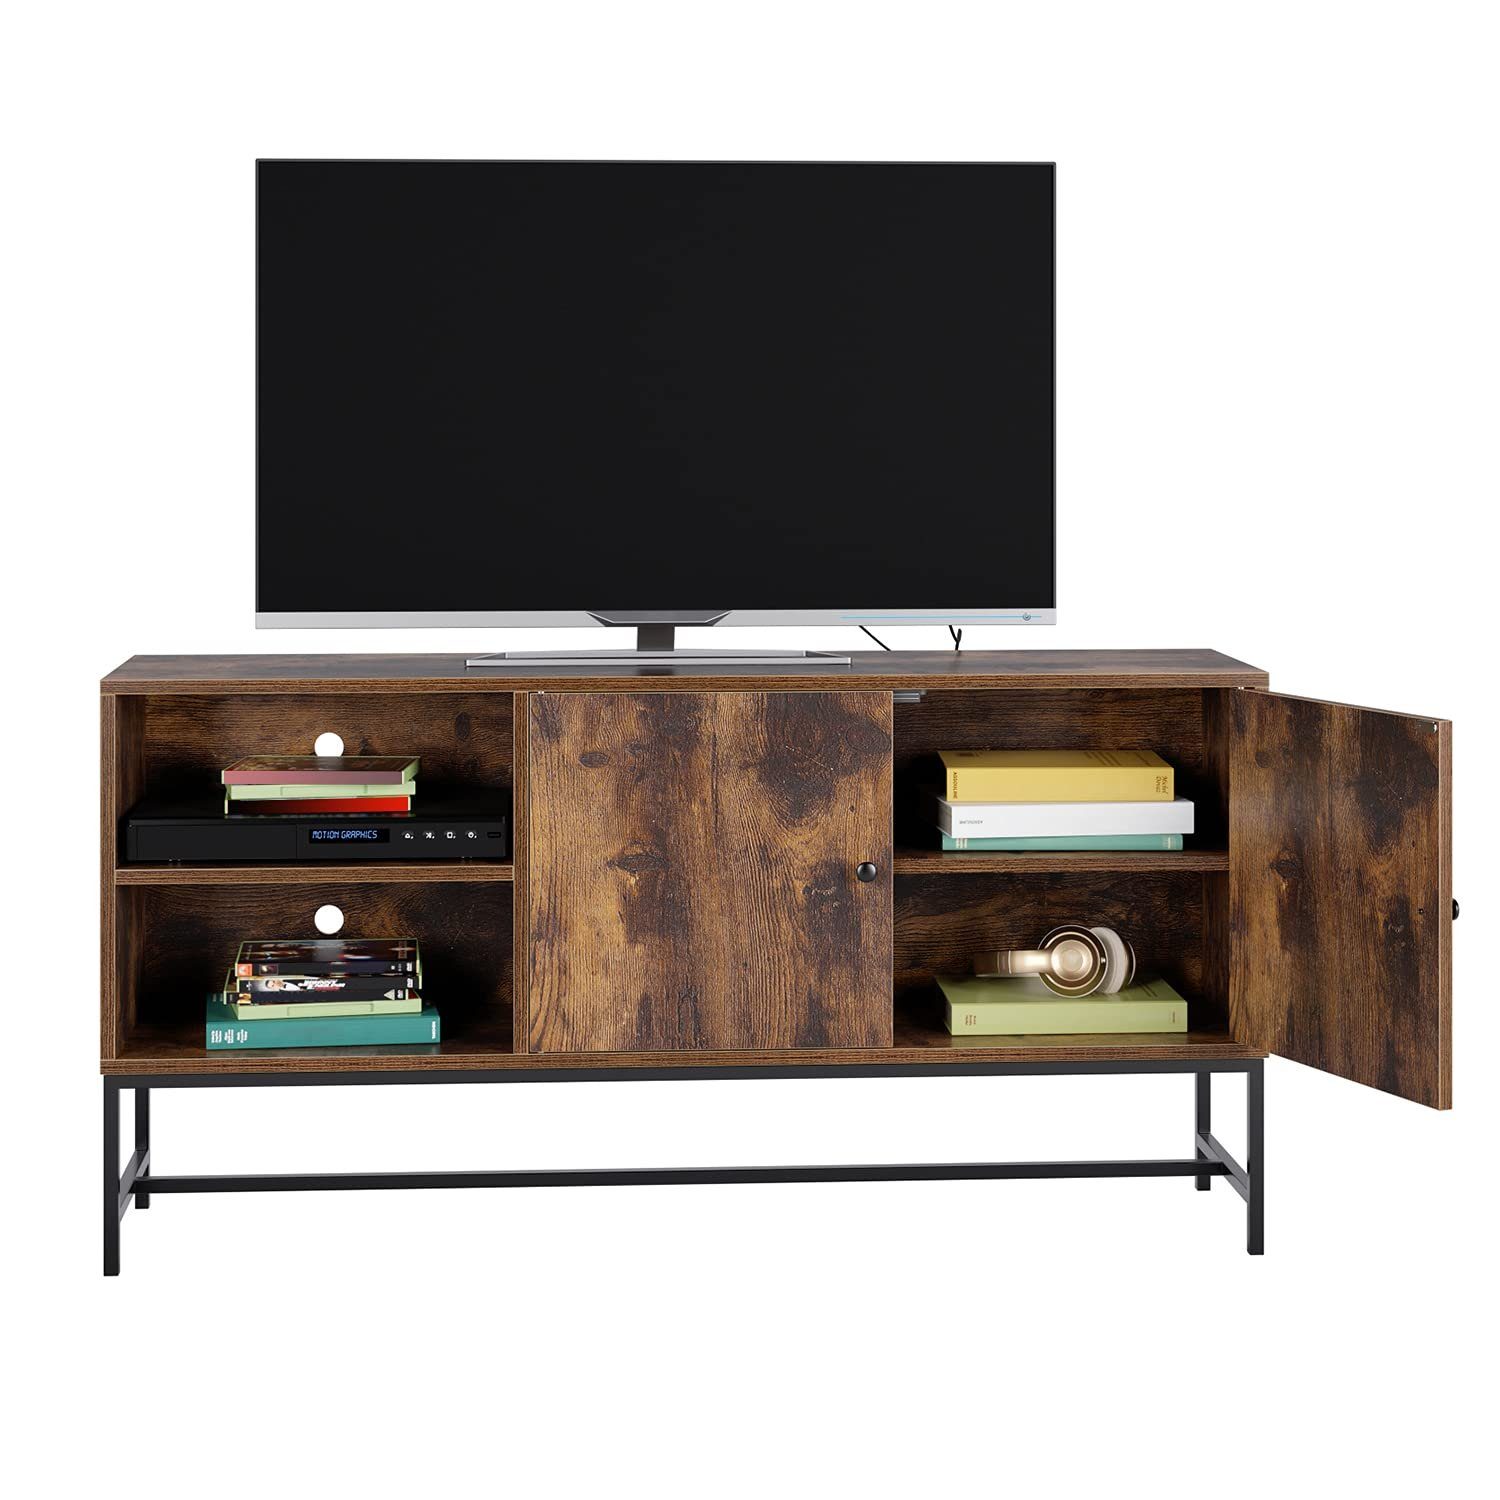 Homfa Lowboard, Fernsehtisch, TV Schrank, mit Schrank und 2 Regalebenen,  für Wohnzimmertisch, Industrie Design